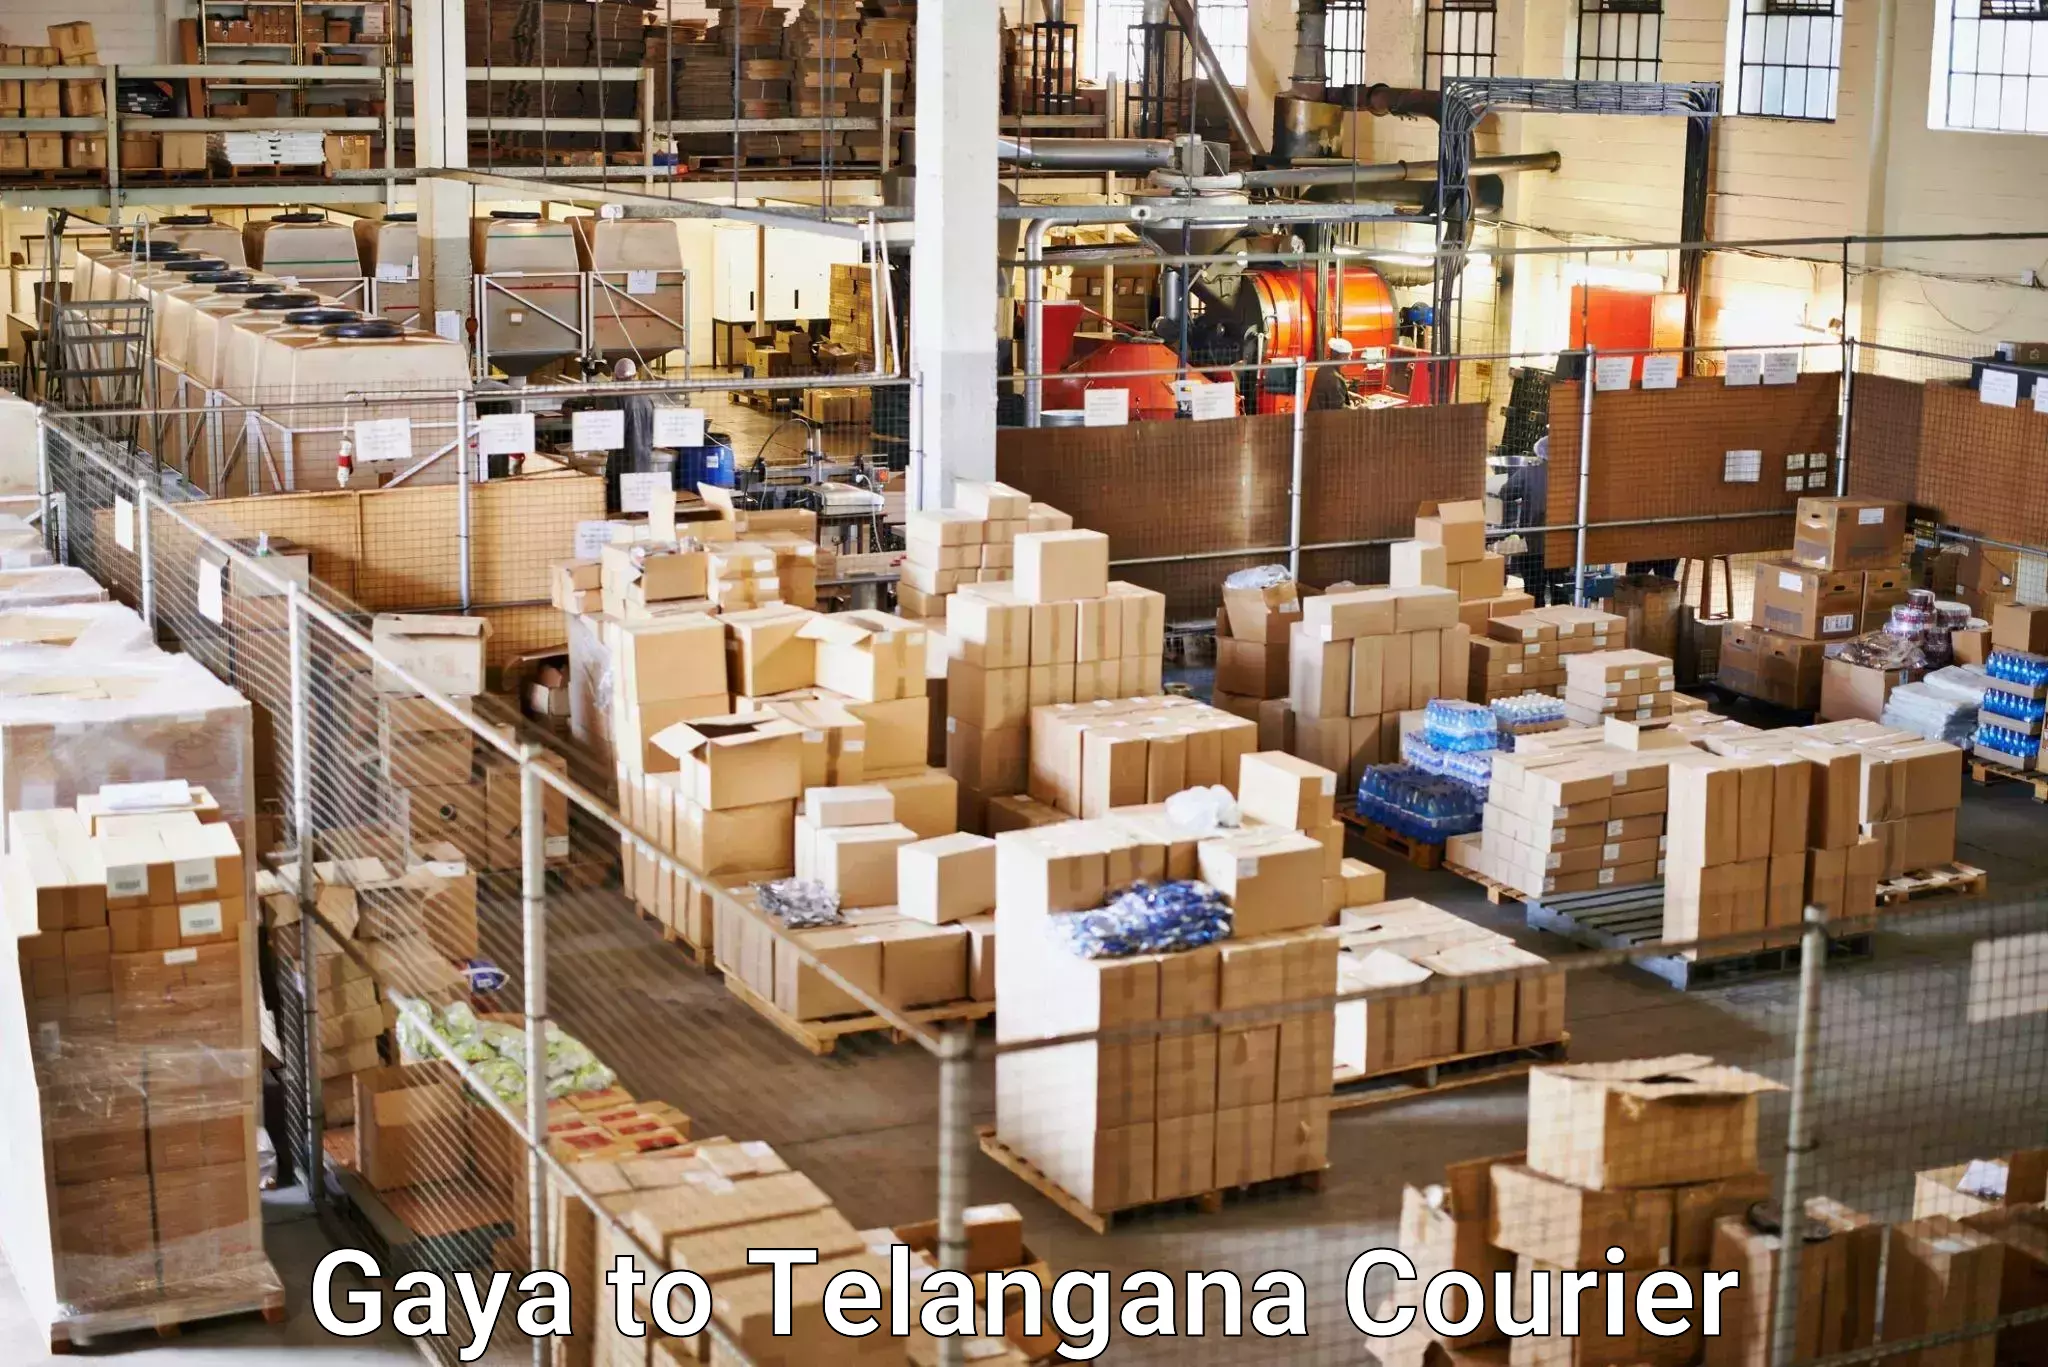 Express courier capabilities Gaya to Jannaram